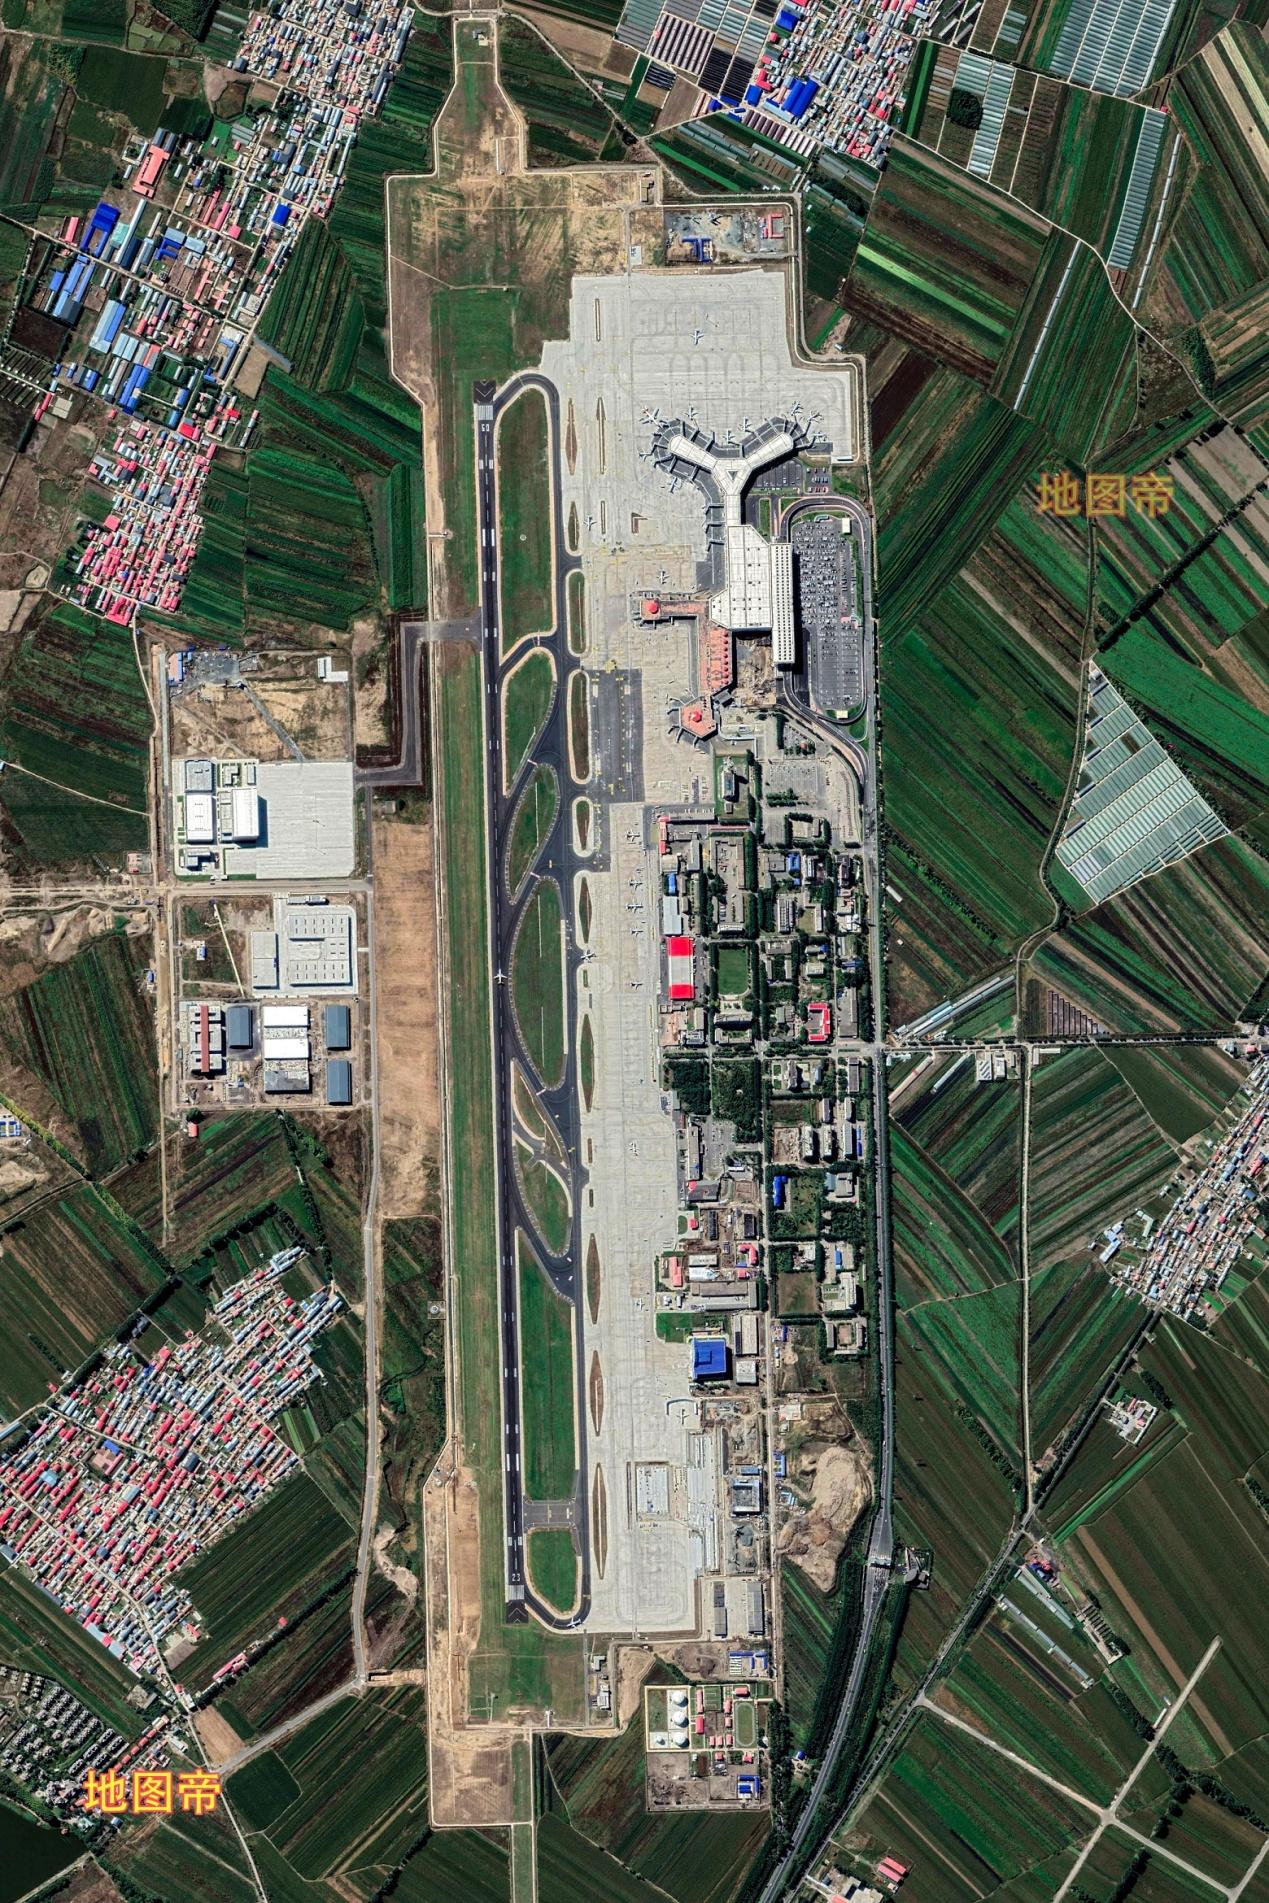 黑龙江省内13个机场图片